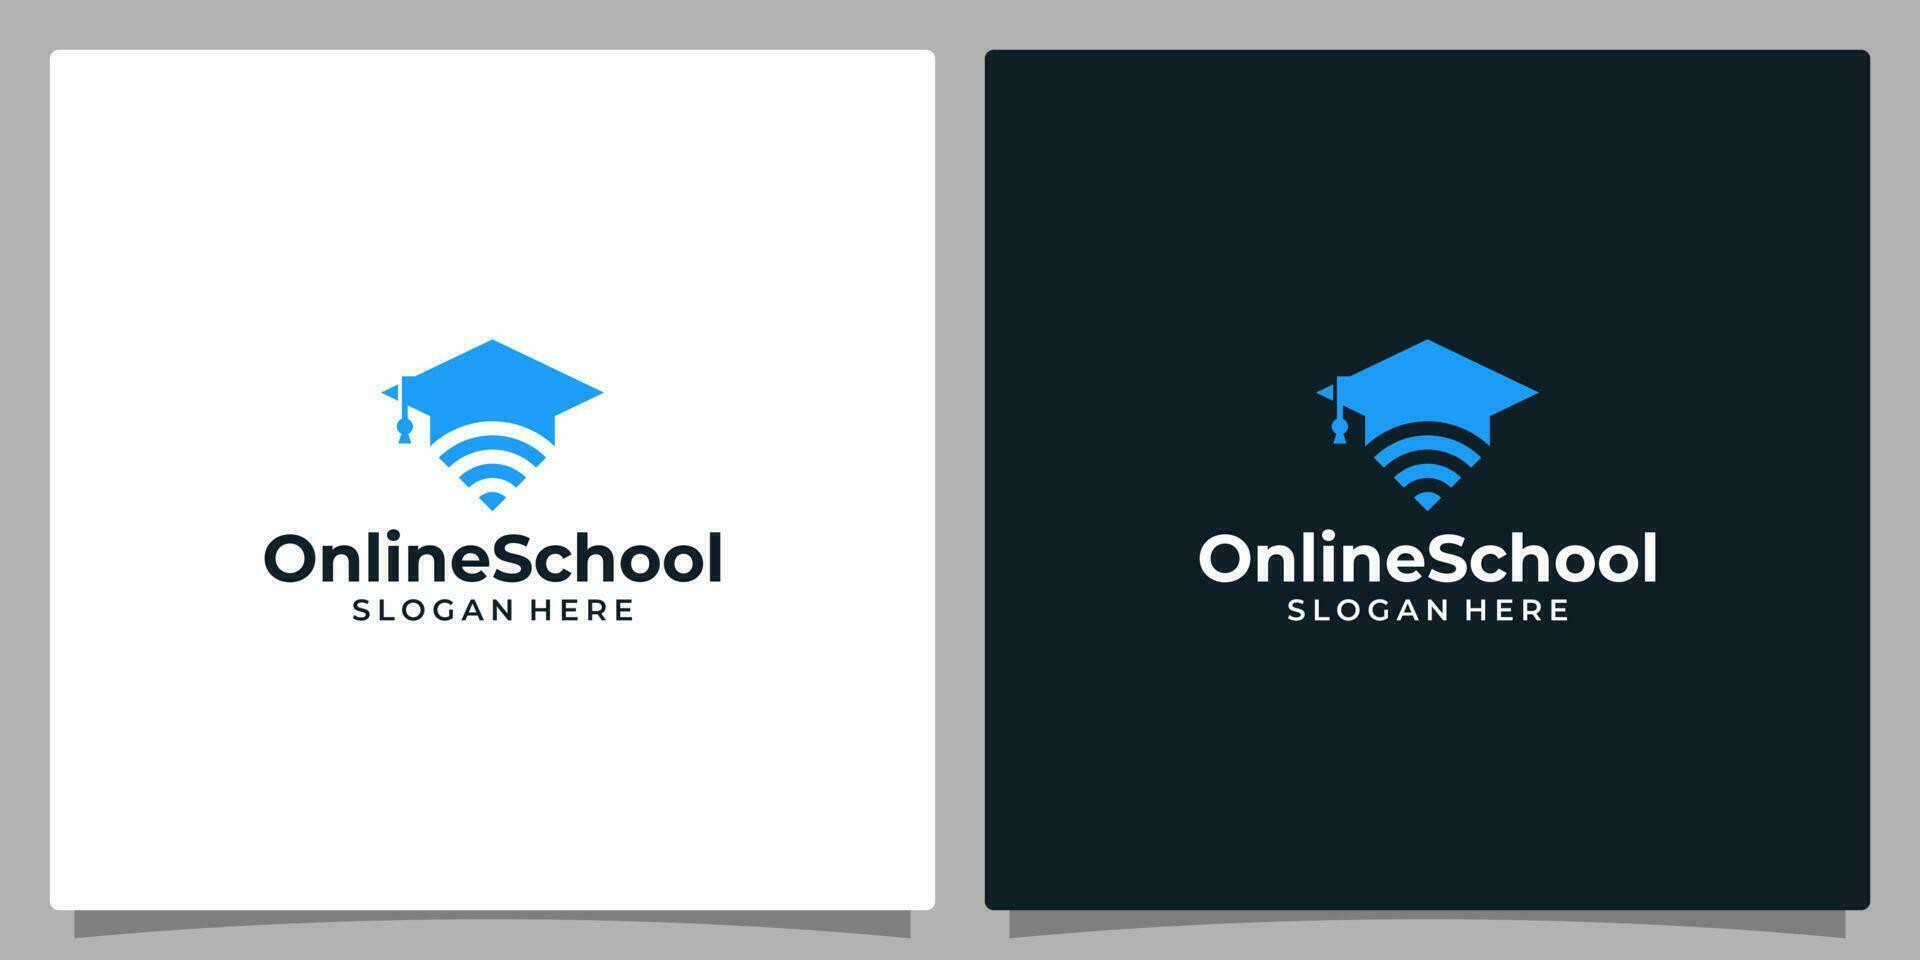 Università, diplomato berretto, città universitaria, formazione scolastica logo design e senza fili dispositivo connessione Wi-Fi icona simbolo logo vettore illustrazione grafico design.